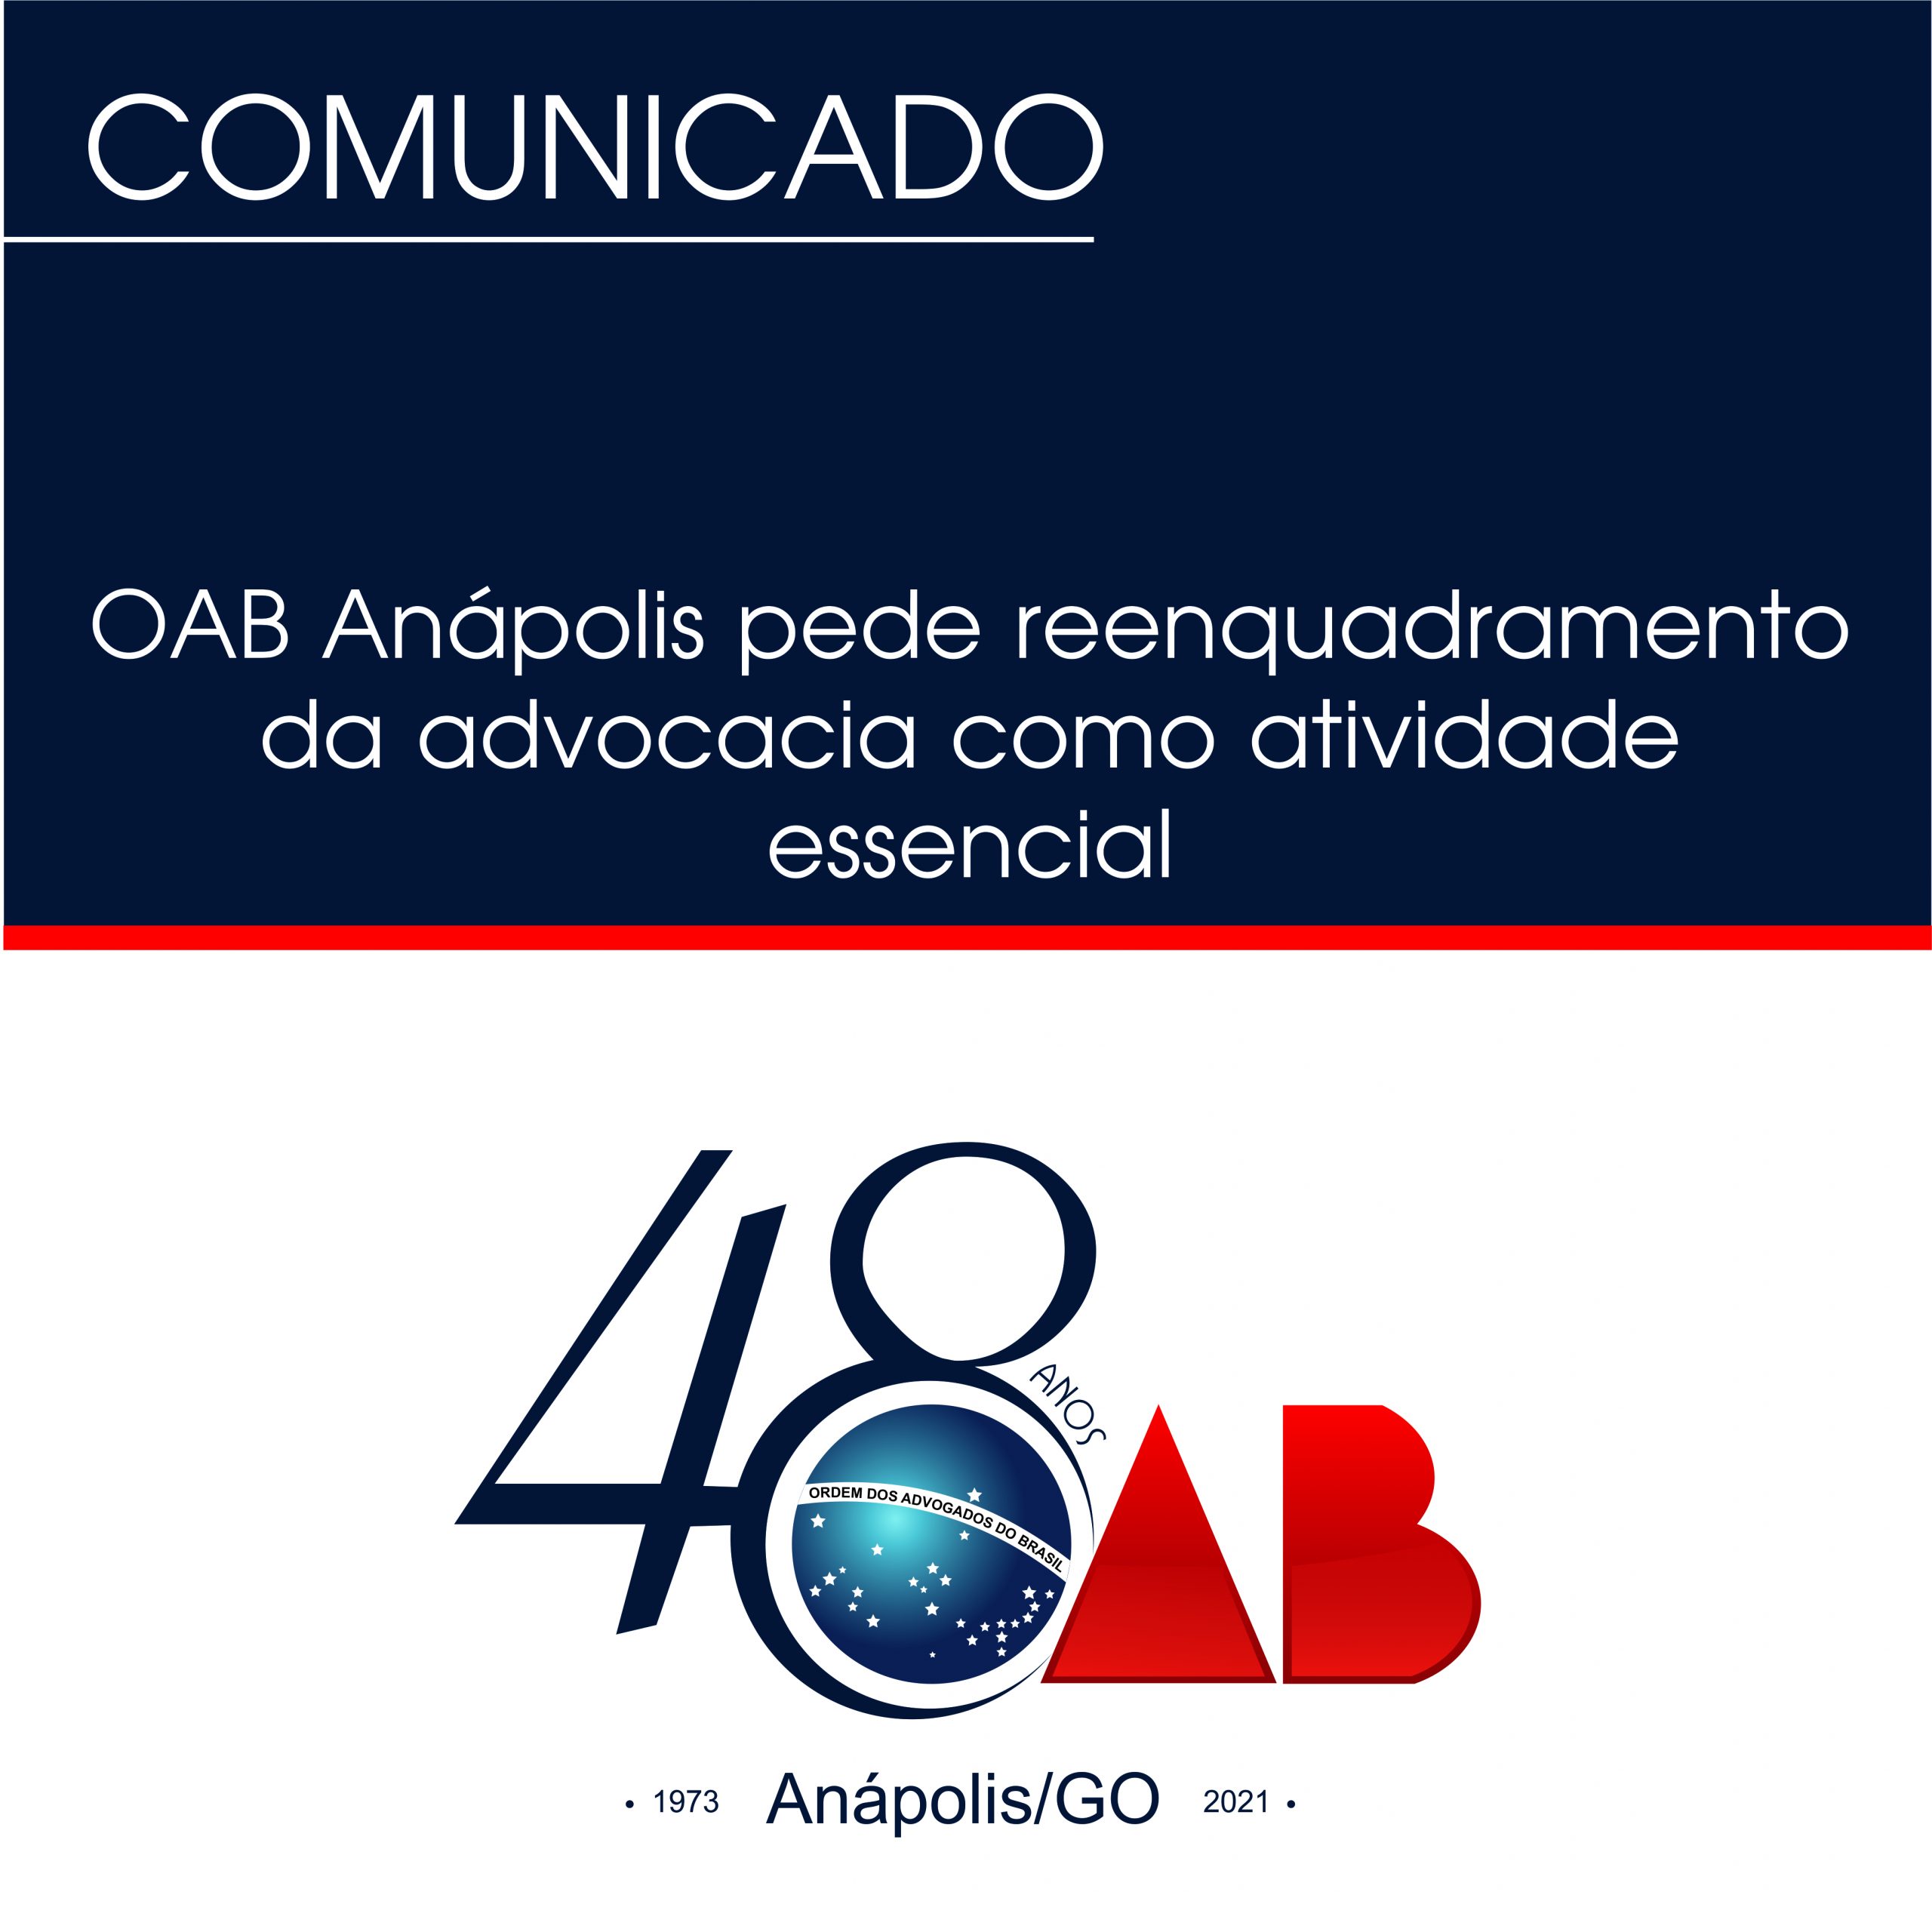 OAB Anápolis pede reenquadramento da advocacia como atividade essencial